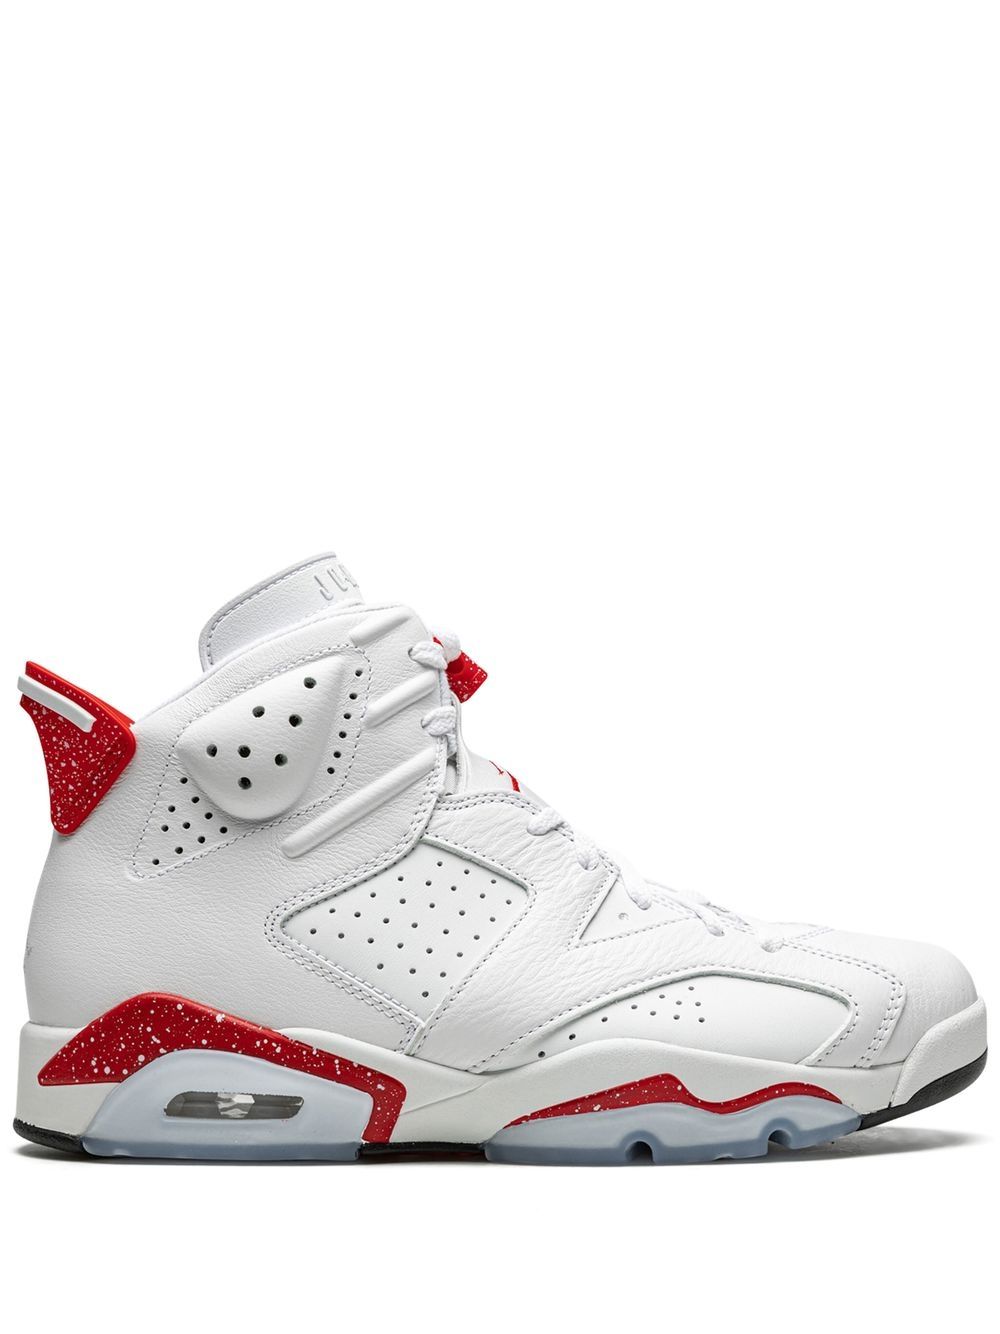 Jordan Air Jordan 6 Retro Red Oreo Sneakers - Farfetch